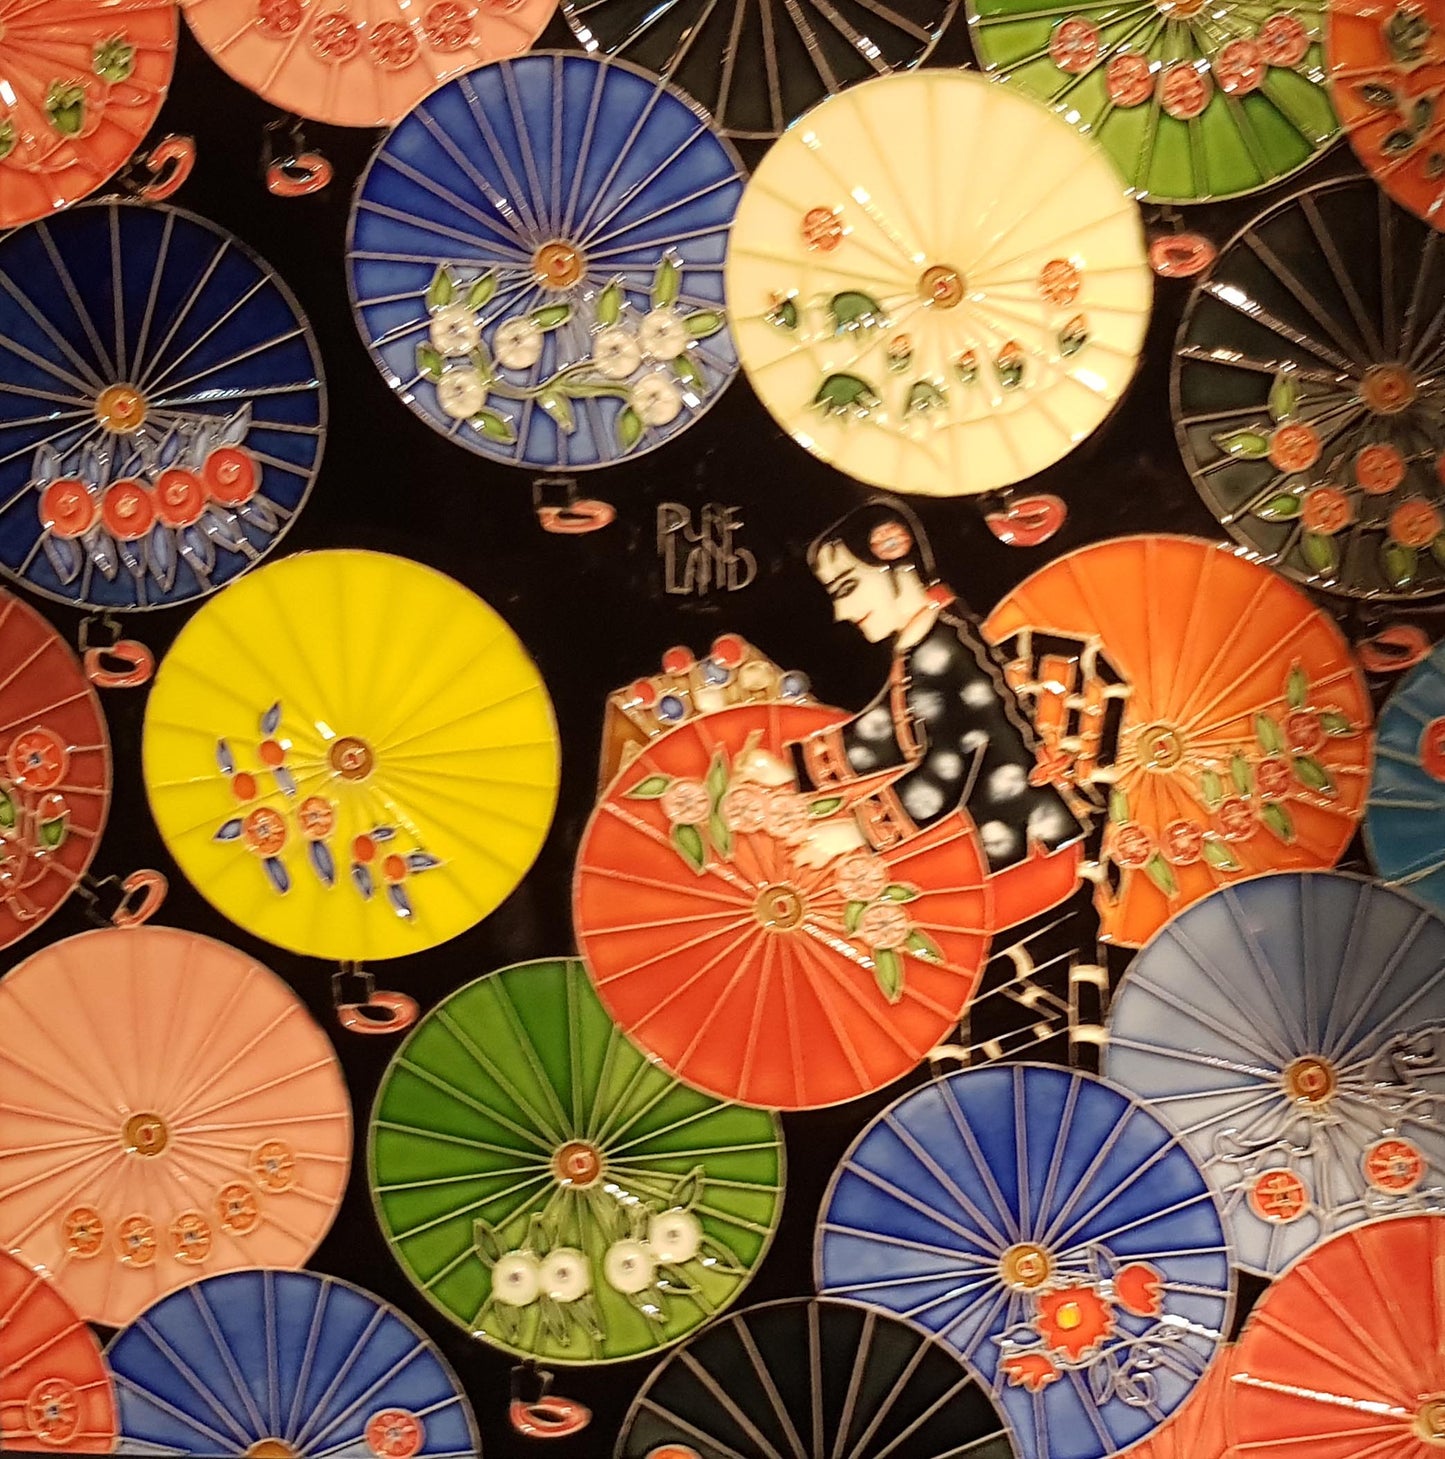 3832 Embroidered Umbrellas 30cm x 30cm Pureland Ceramic Tile